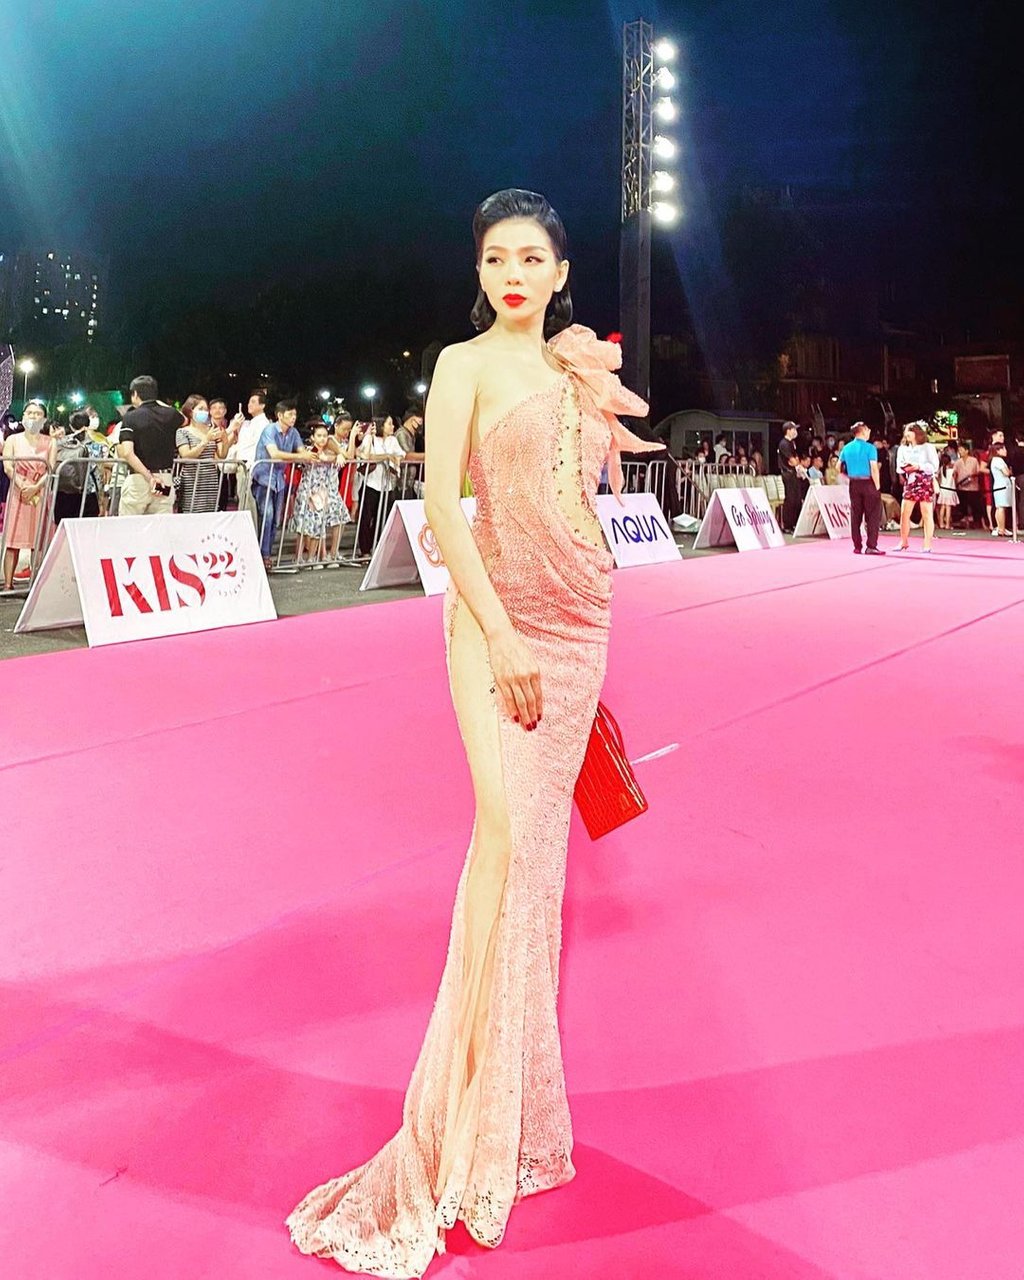 Xuất hiện tại đêm Chung kết Hoa hậu Việt Nam 2020, Lệ Quyên thiêu đốt thảm đỏ hôm ấy với bộ đầm cắt khoét hiểm hóc, chưa kể đường xẻ cao đến tận hông phô diễn trọn vẹn đôi chân, và cảm giác như nếu không cẩn thận thì có thể gặp sự cố bất kỳ lúc nào.